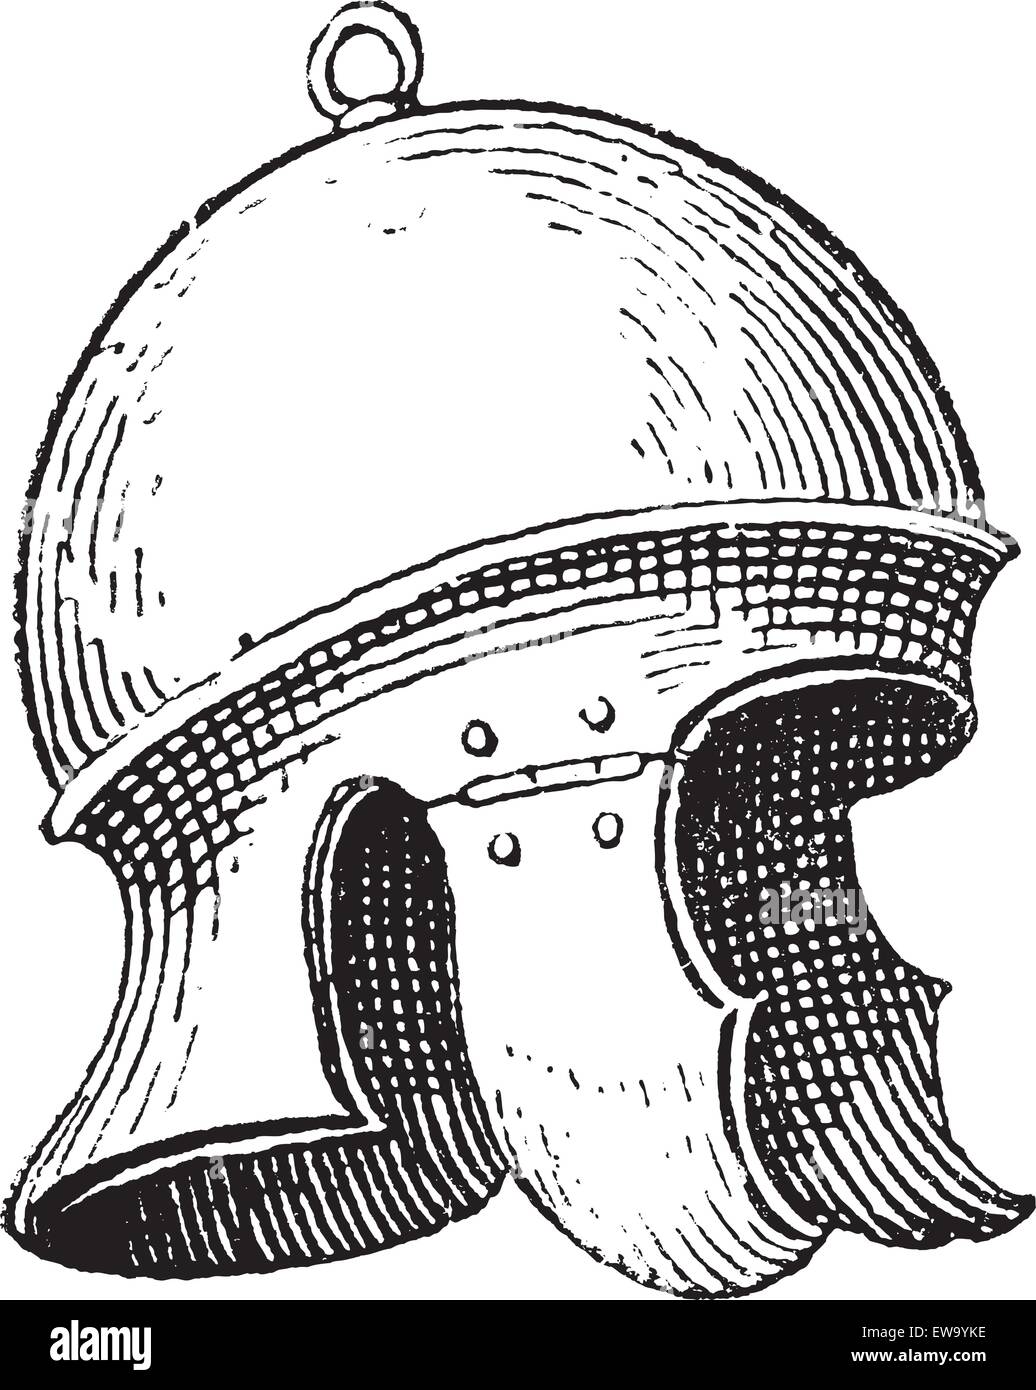 Le casque de légionnaire romain ou galea vintage la gravure. Vieille illustration gravée de la légionellose casque. Illustration de Vecteur